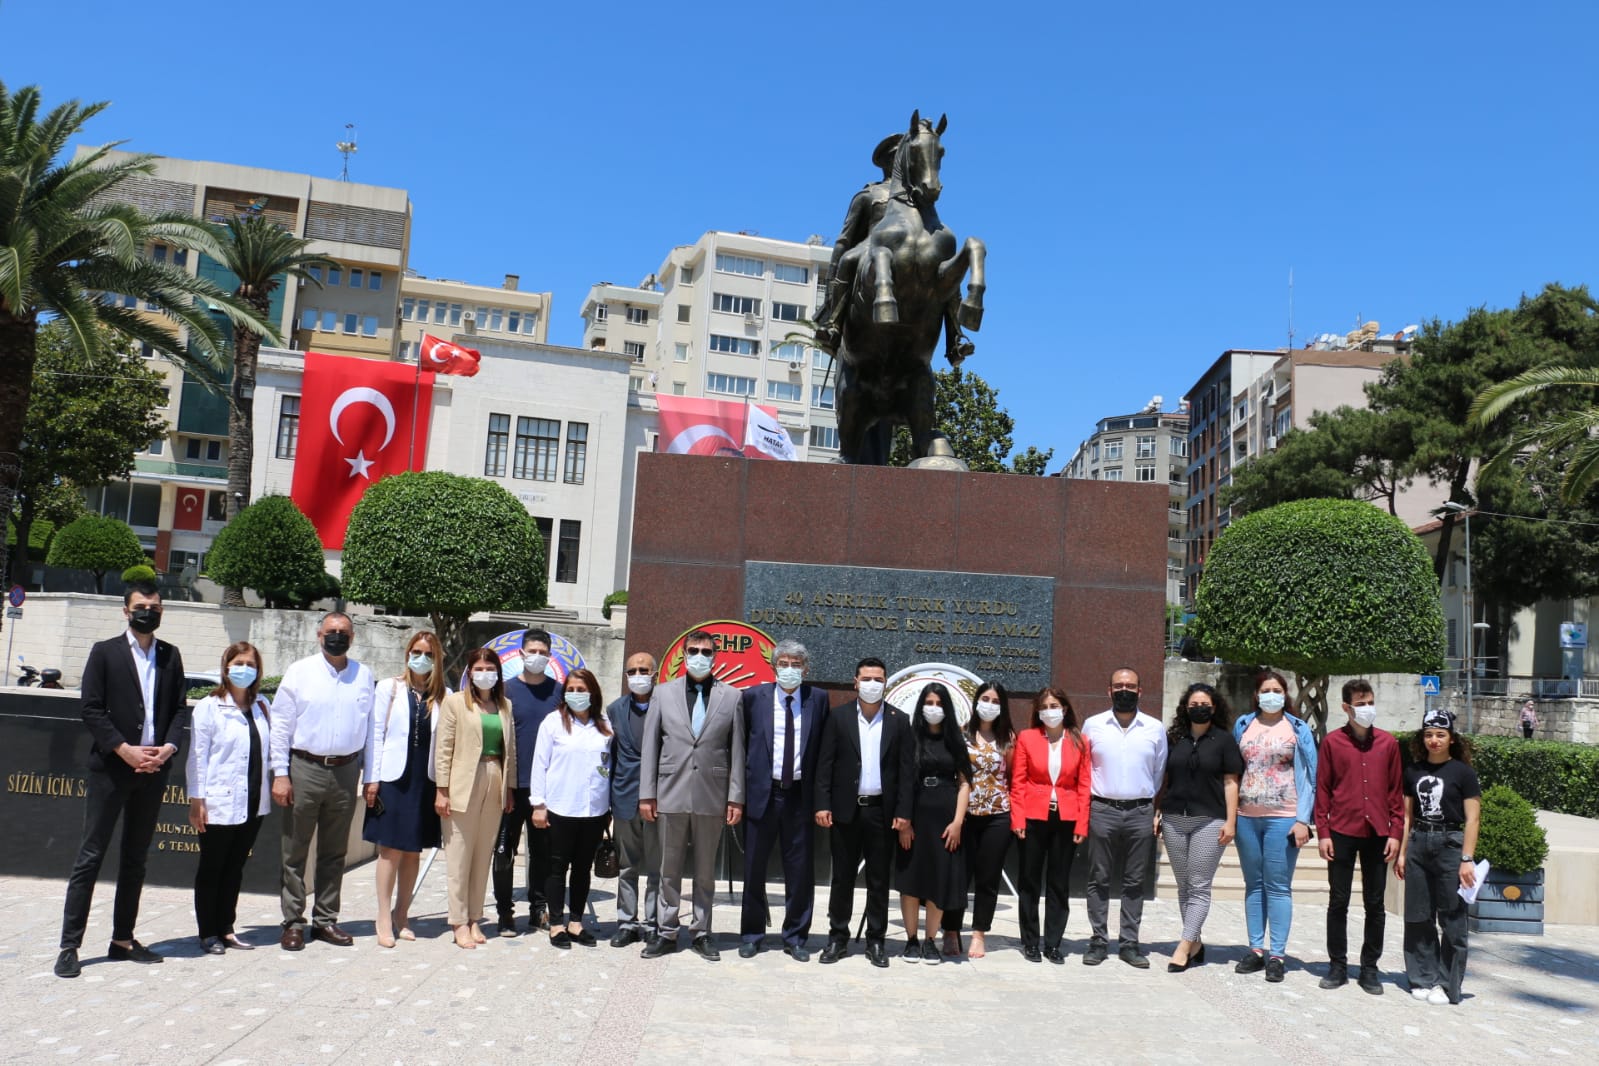 CHP, Eğitim İş ve ADD Hatay Atatürk büstüne çelenk sundu